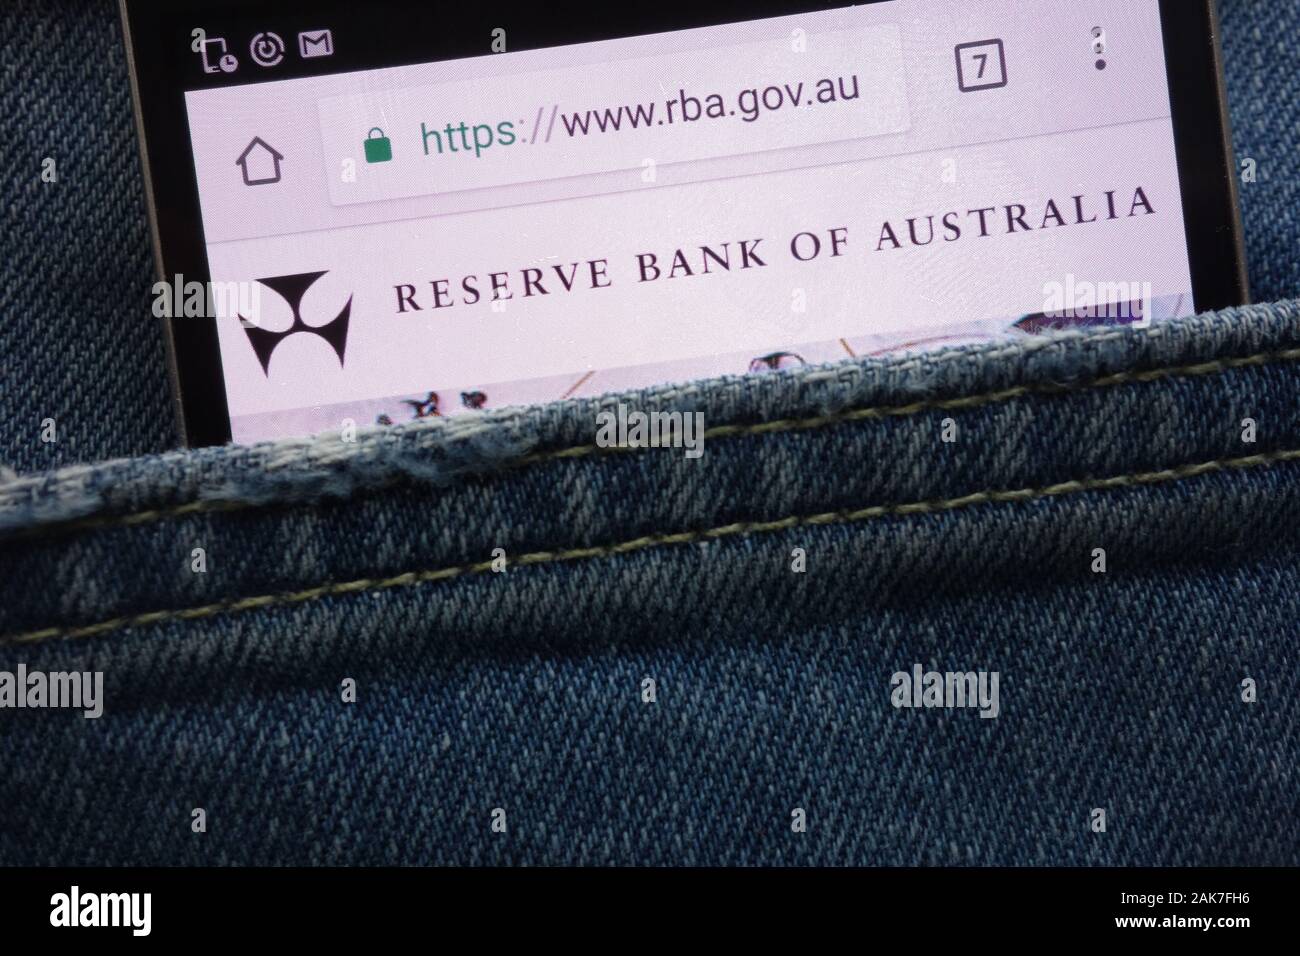 Reserve Bank of Australia (RBA) Sito web visualizzato sullo smartphone nascosto nella tasca dei jeans Foto Stock